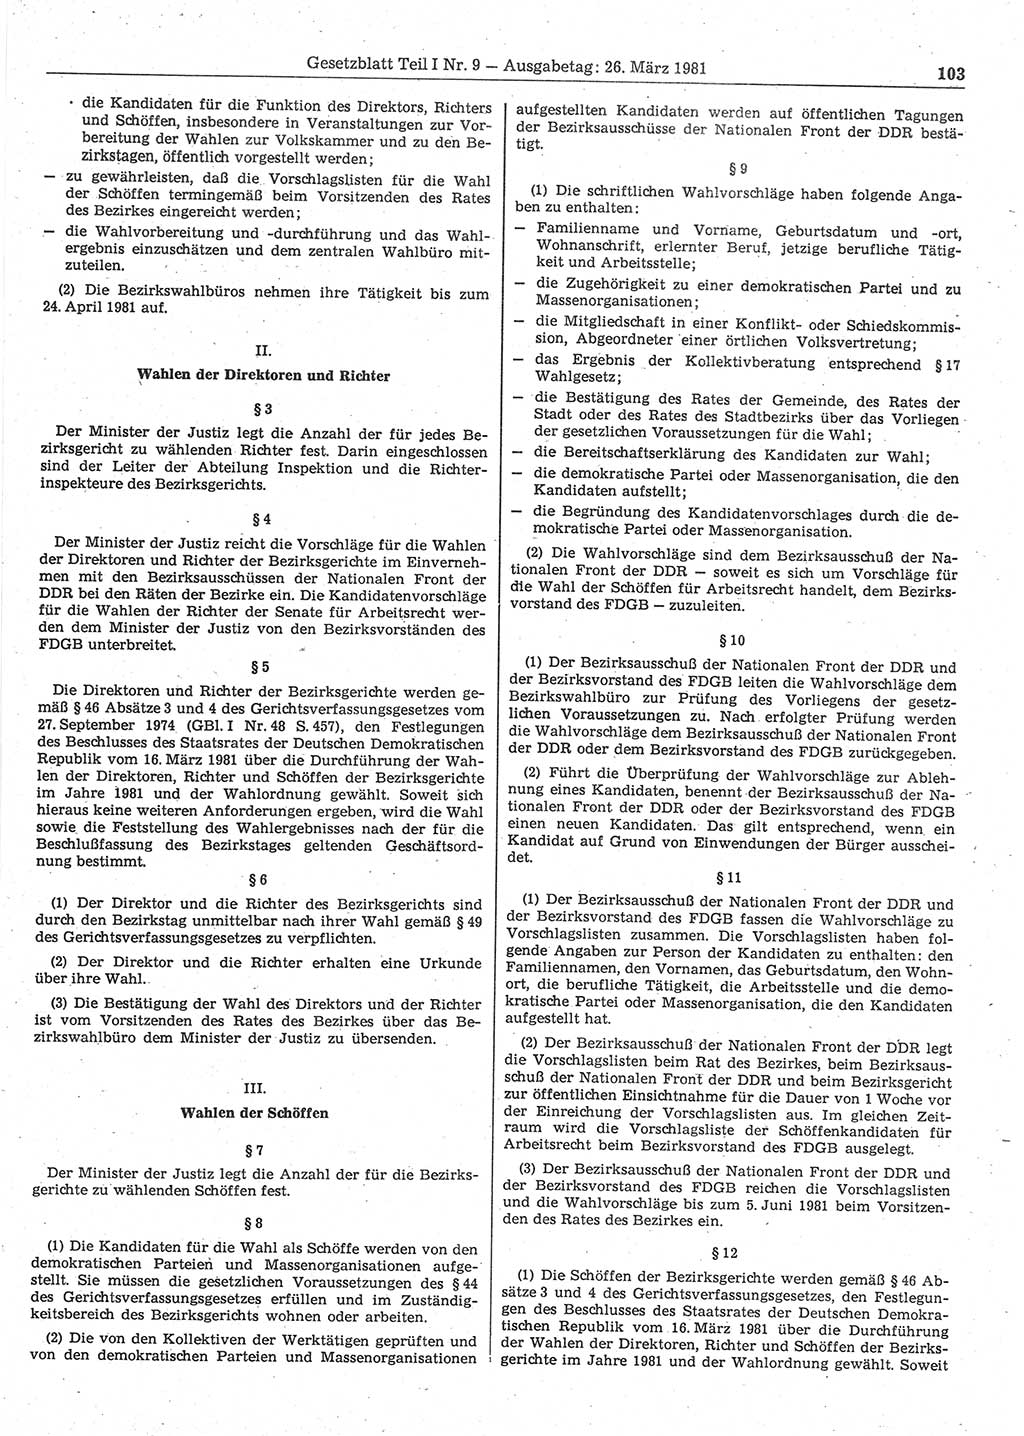 Gesetzblatt (GBl.) der Deutschen Demokratischen Republik (DDR) Teil Ⅰ 1981, Seite 103 (GBl. DDR Ⅰ 1981, S. 103)